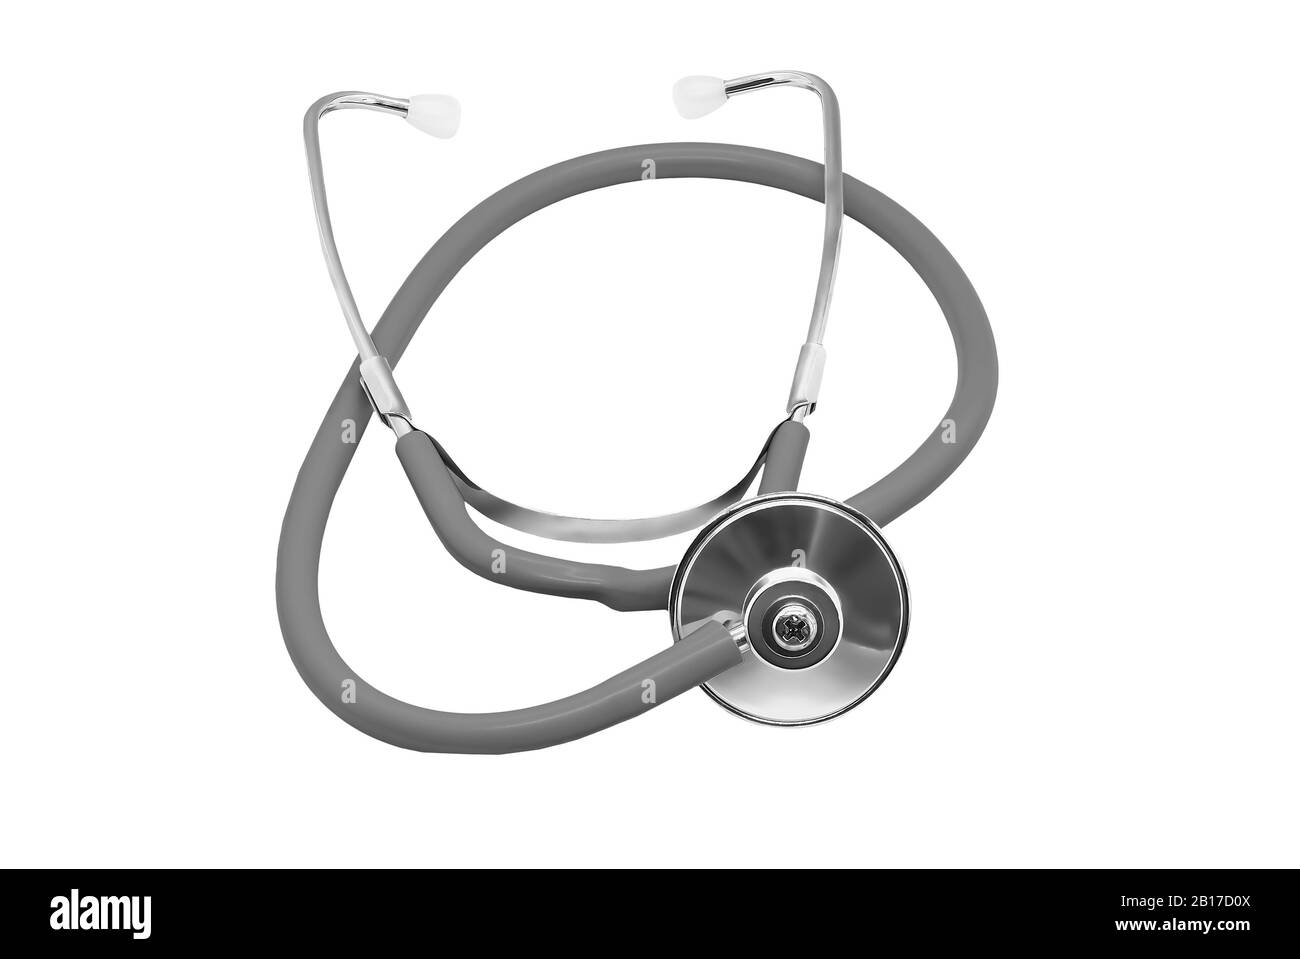 Medical stethoscope isolated on white background Stock Photo